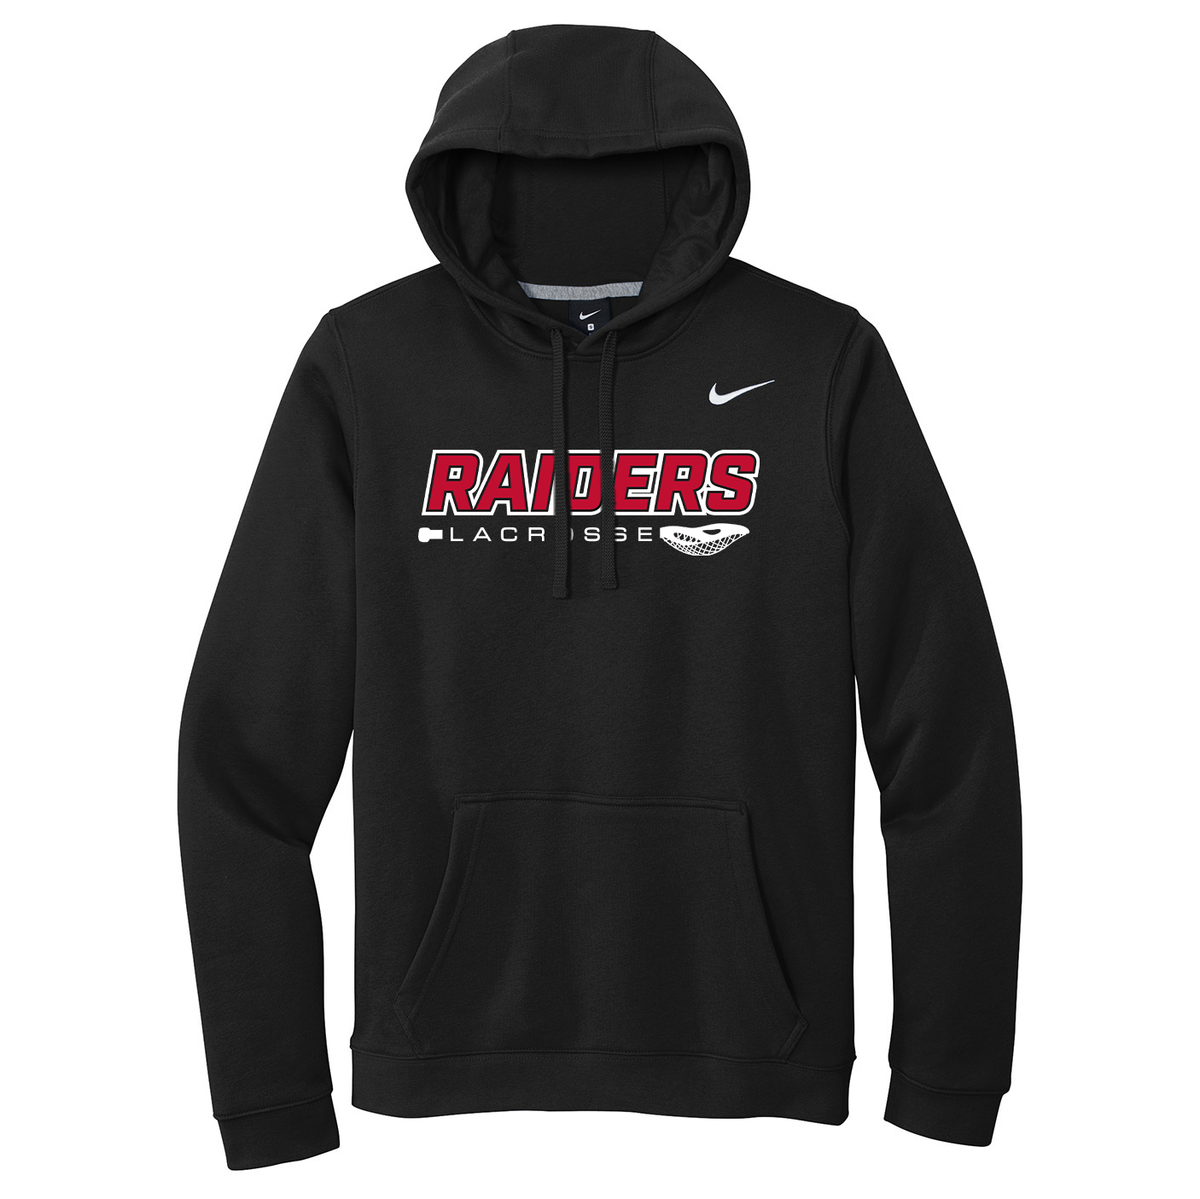 PM Raiders Boys Lacrosse Nike Fleece Sweatshirt